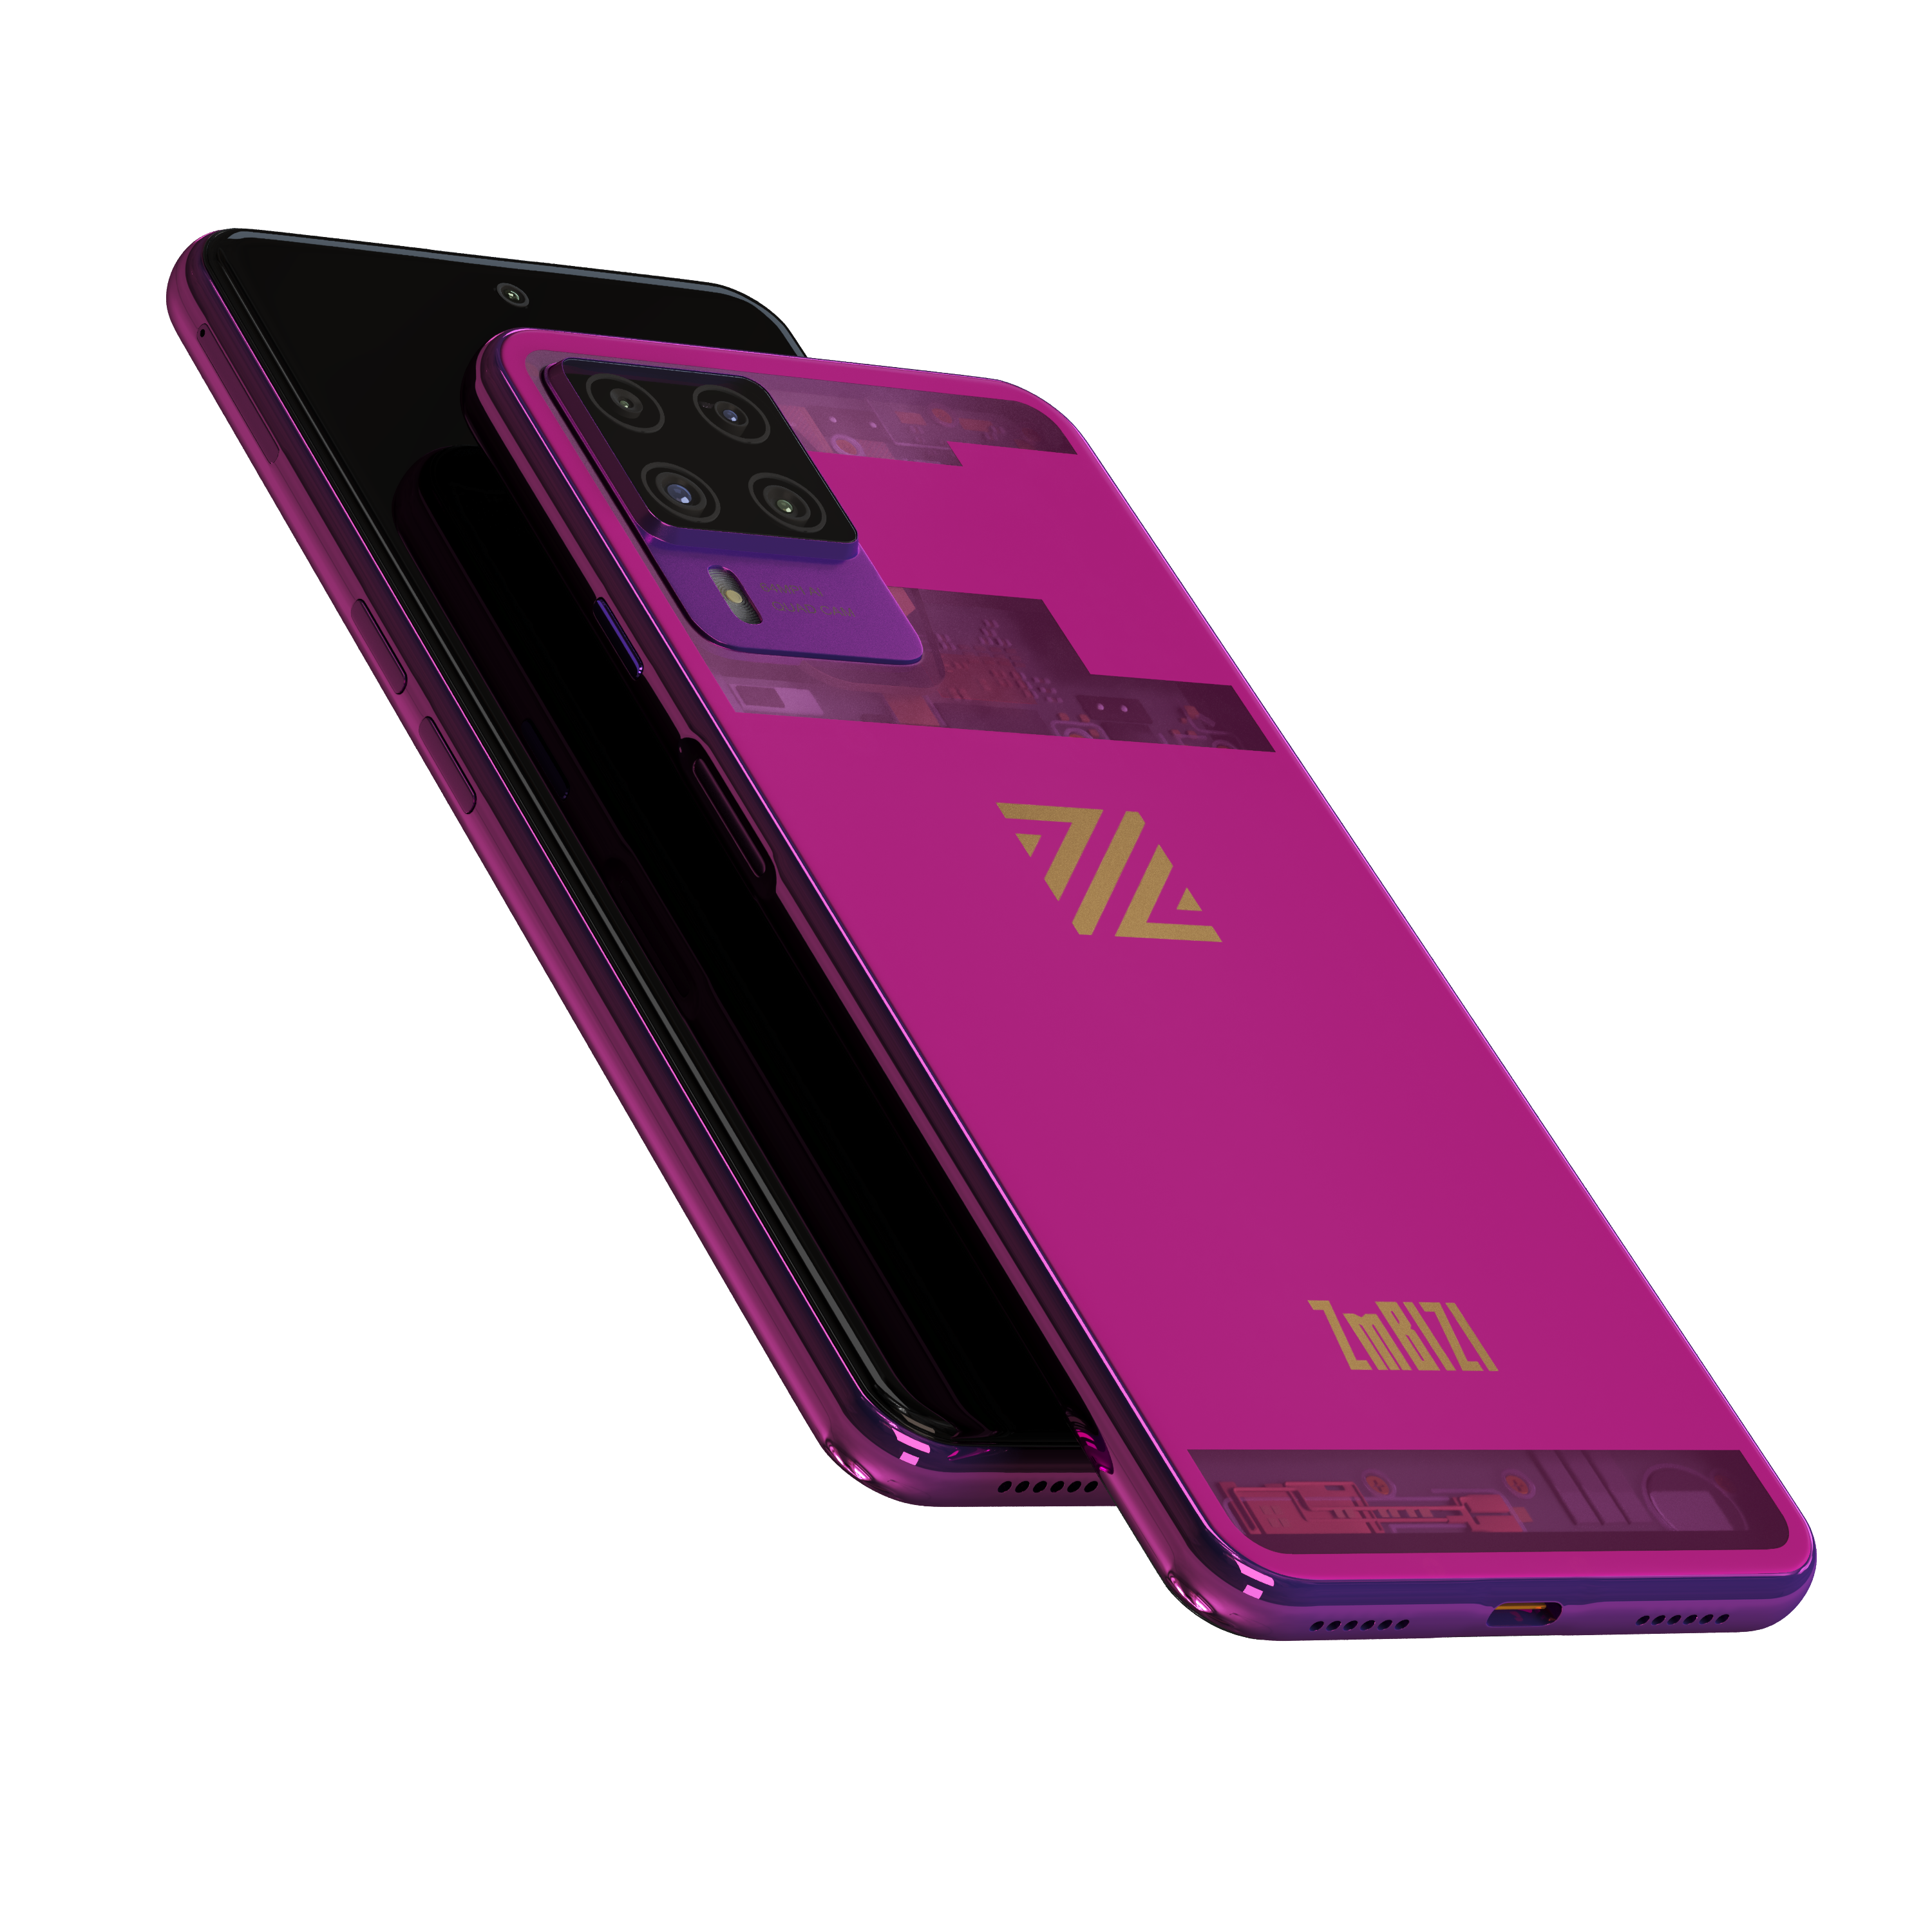 Image of the ZmBIZI phone